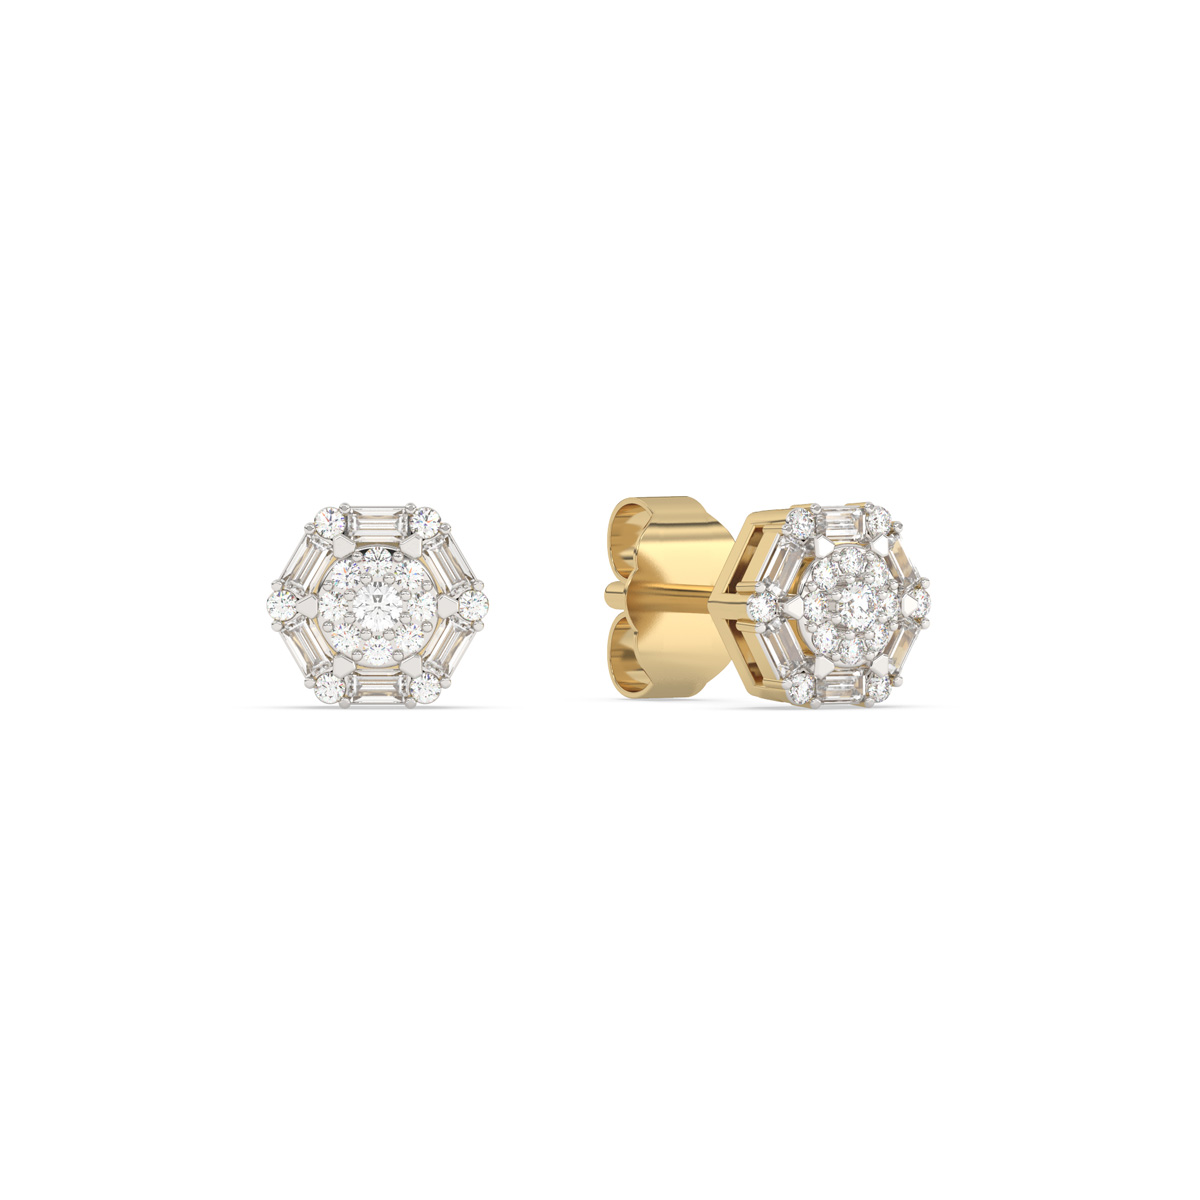 FI52576WWD4YP
14k yellow gold diamond earrings